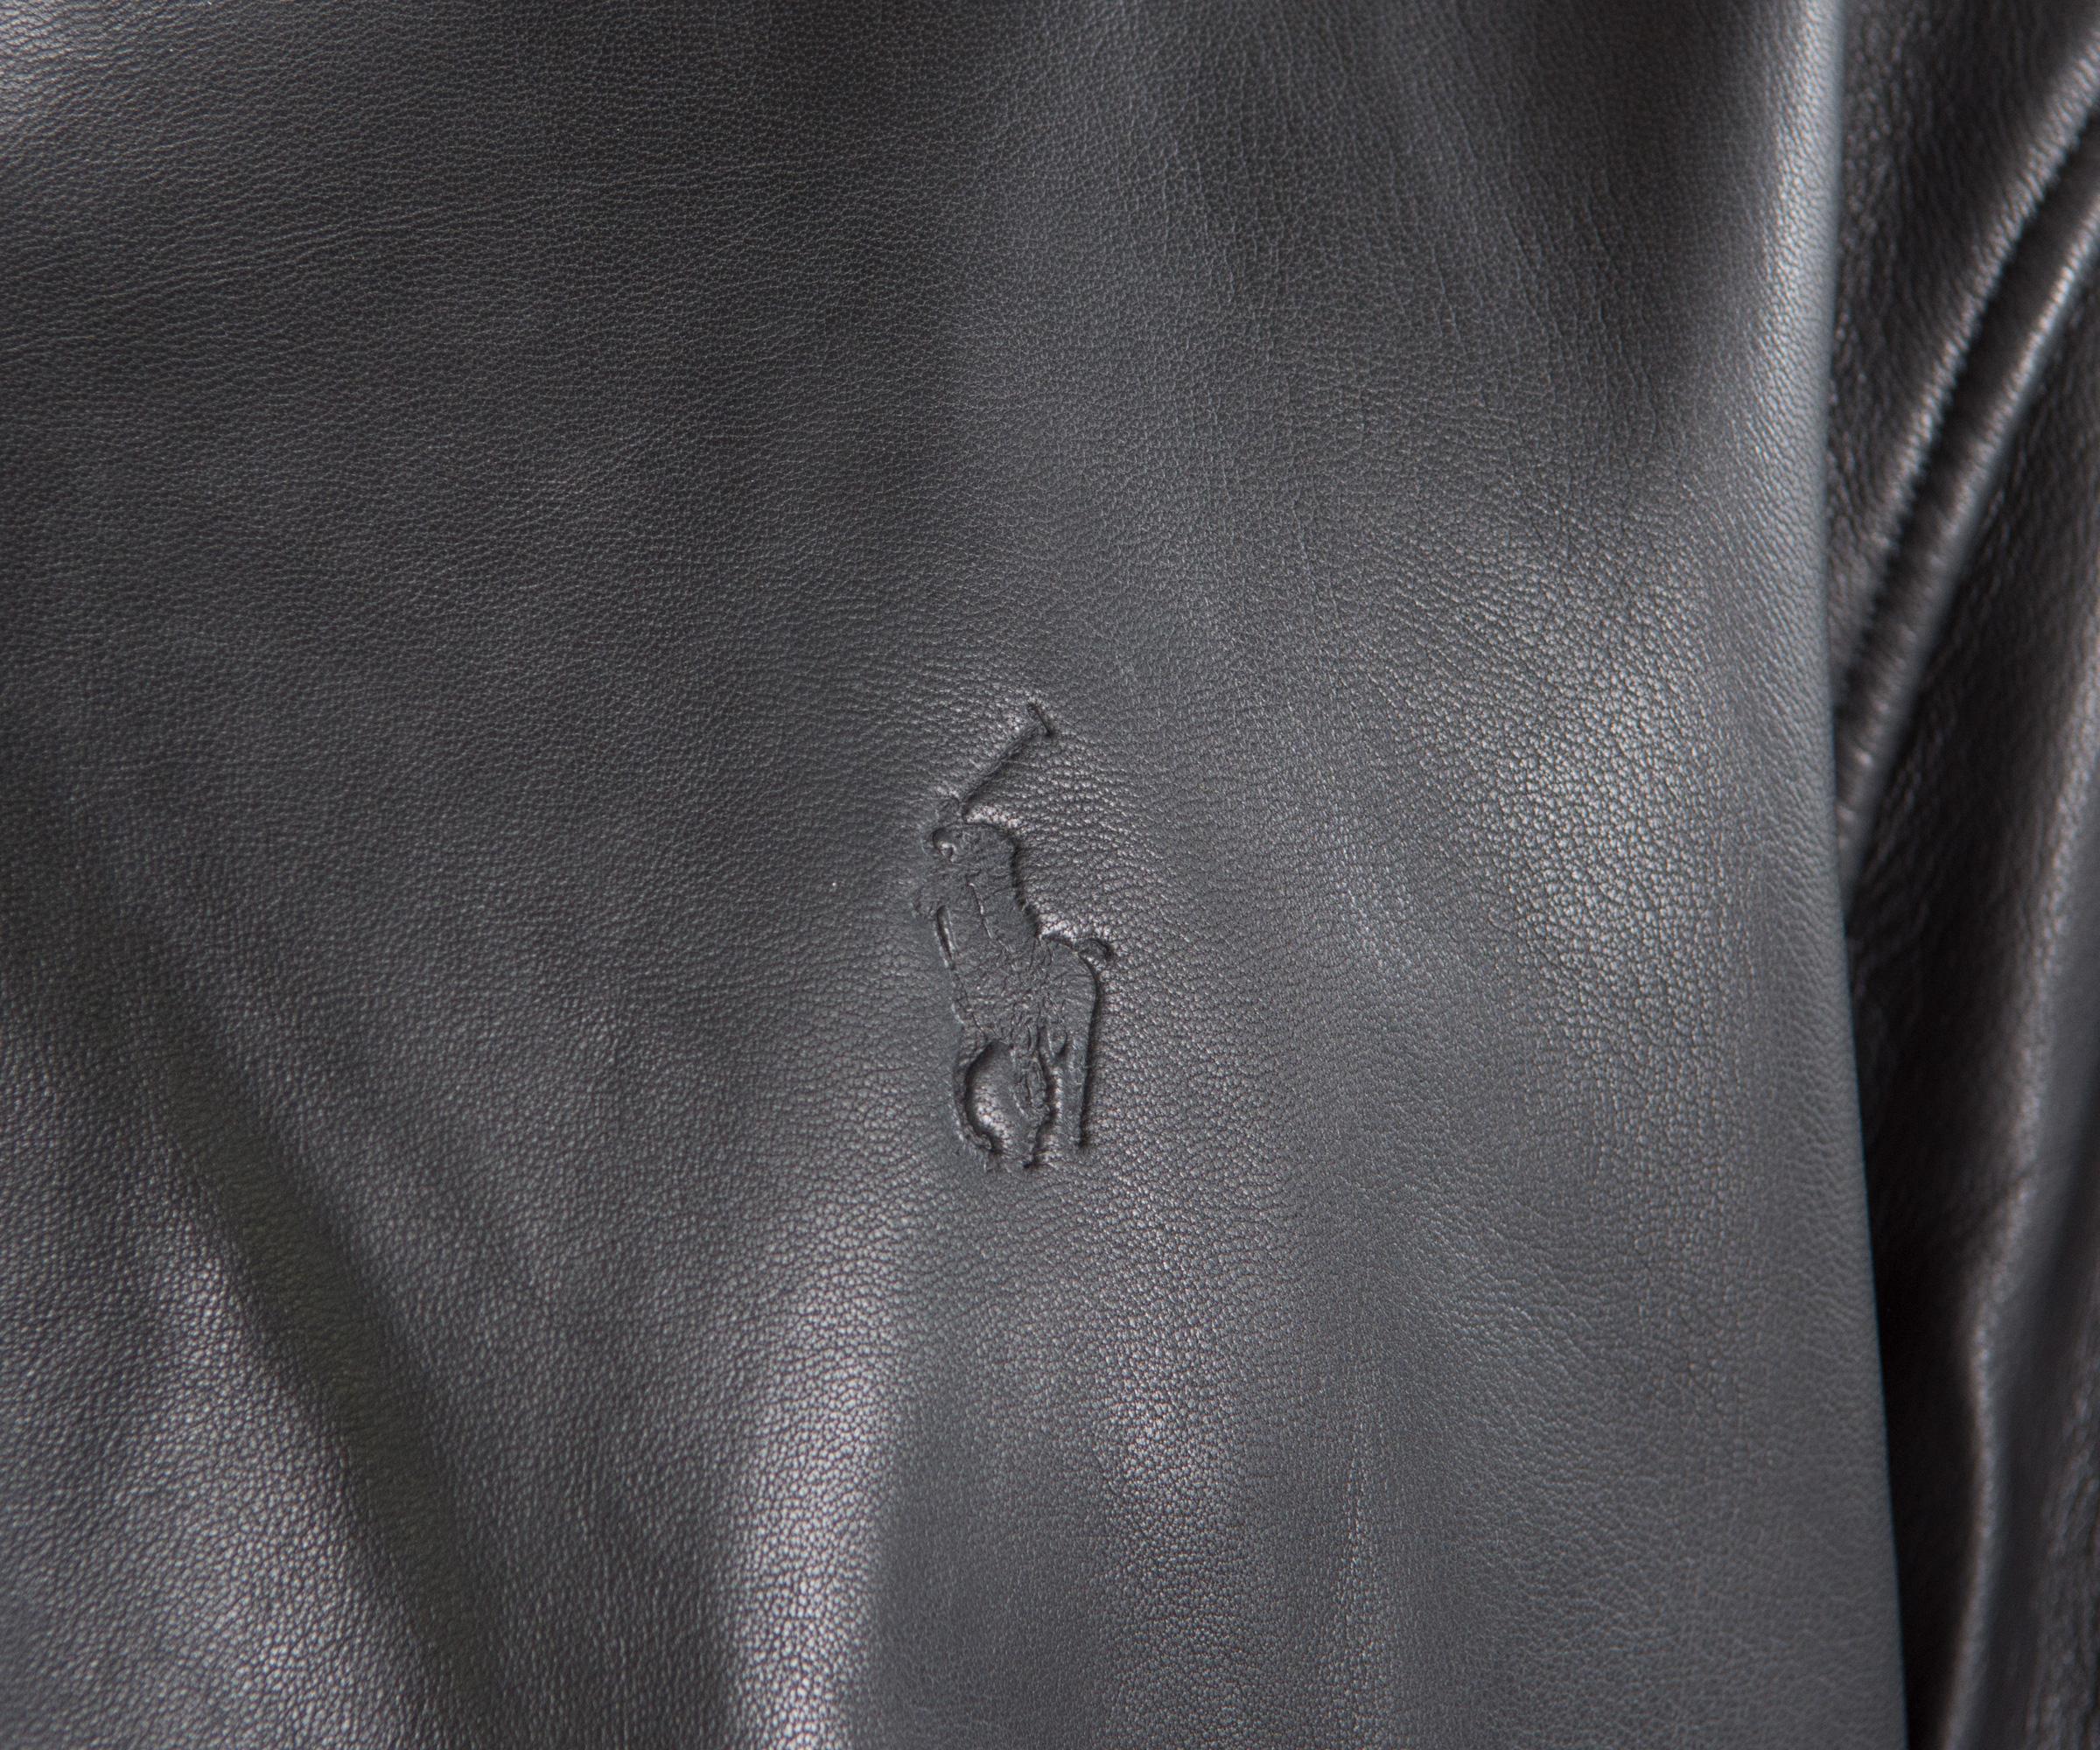 ralph lauren maxwell leather jacket